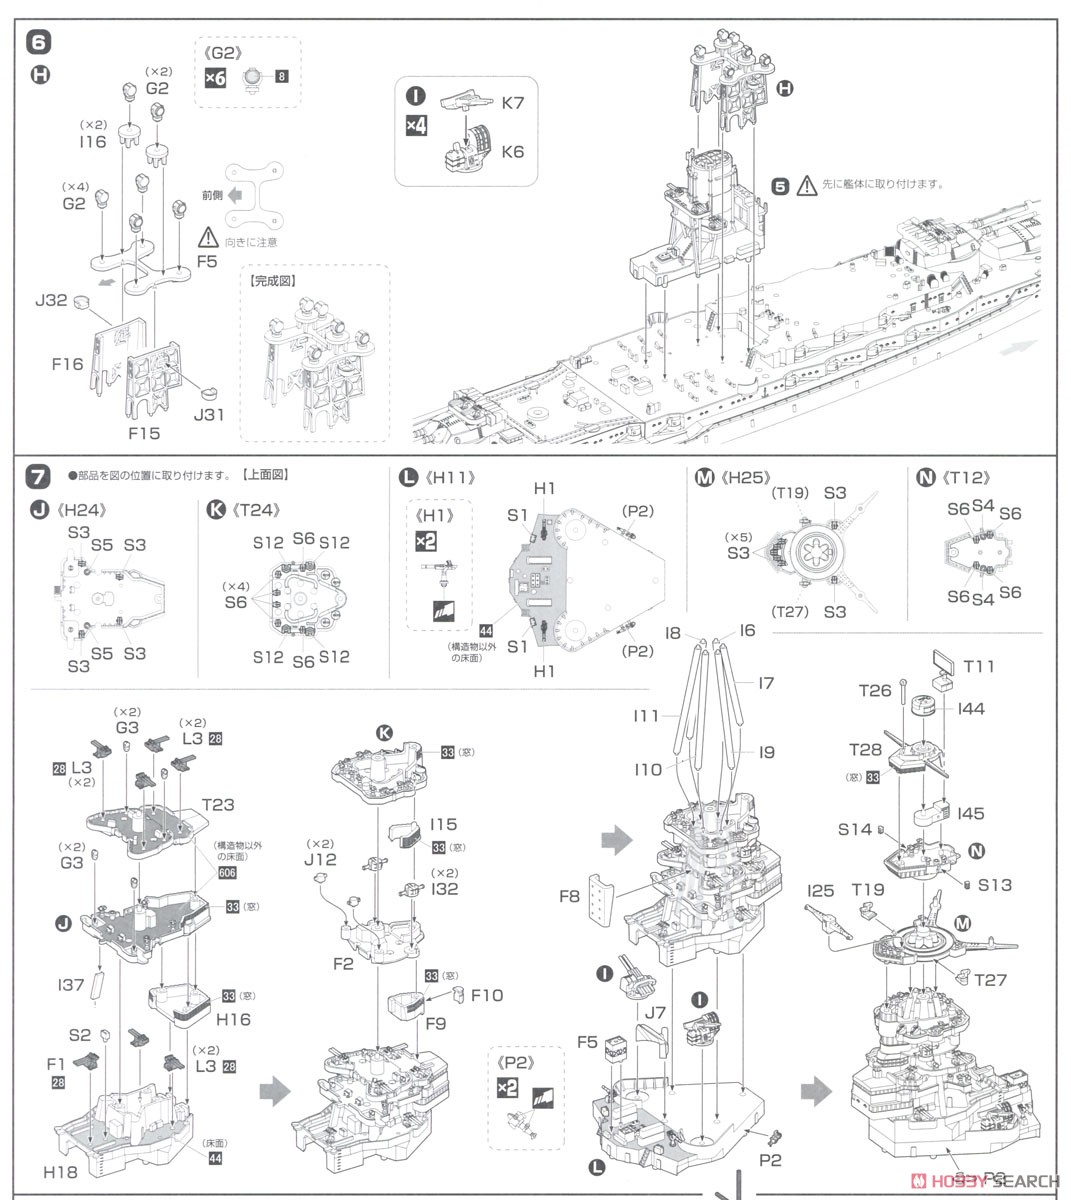 日本海軍戦艦 長門 レイテ沖海戦時 フルハルモデル (プラモデル) 設計図4